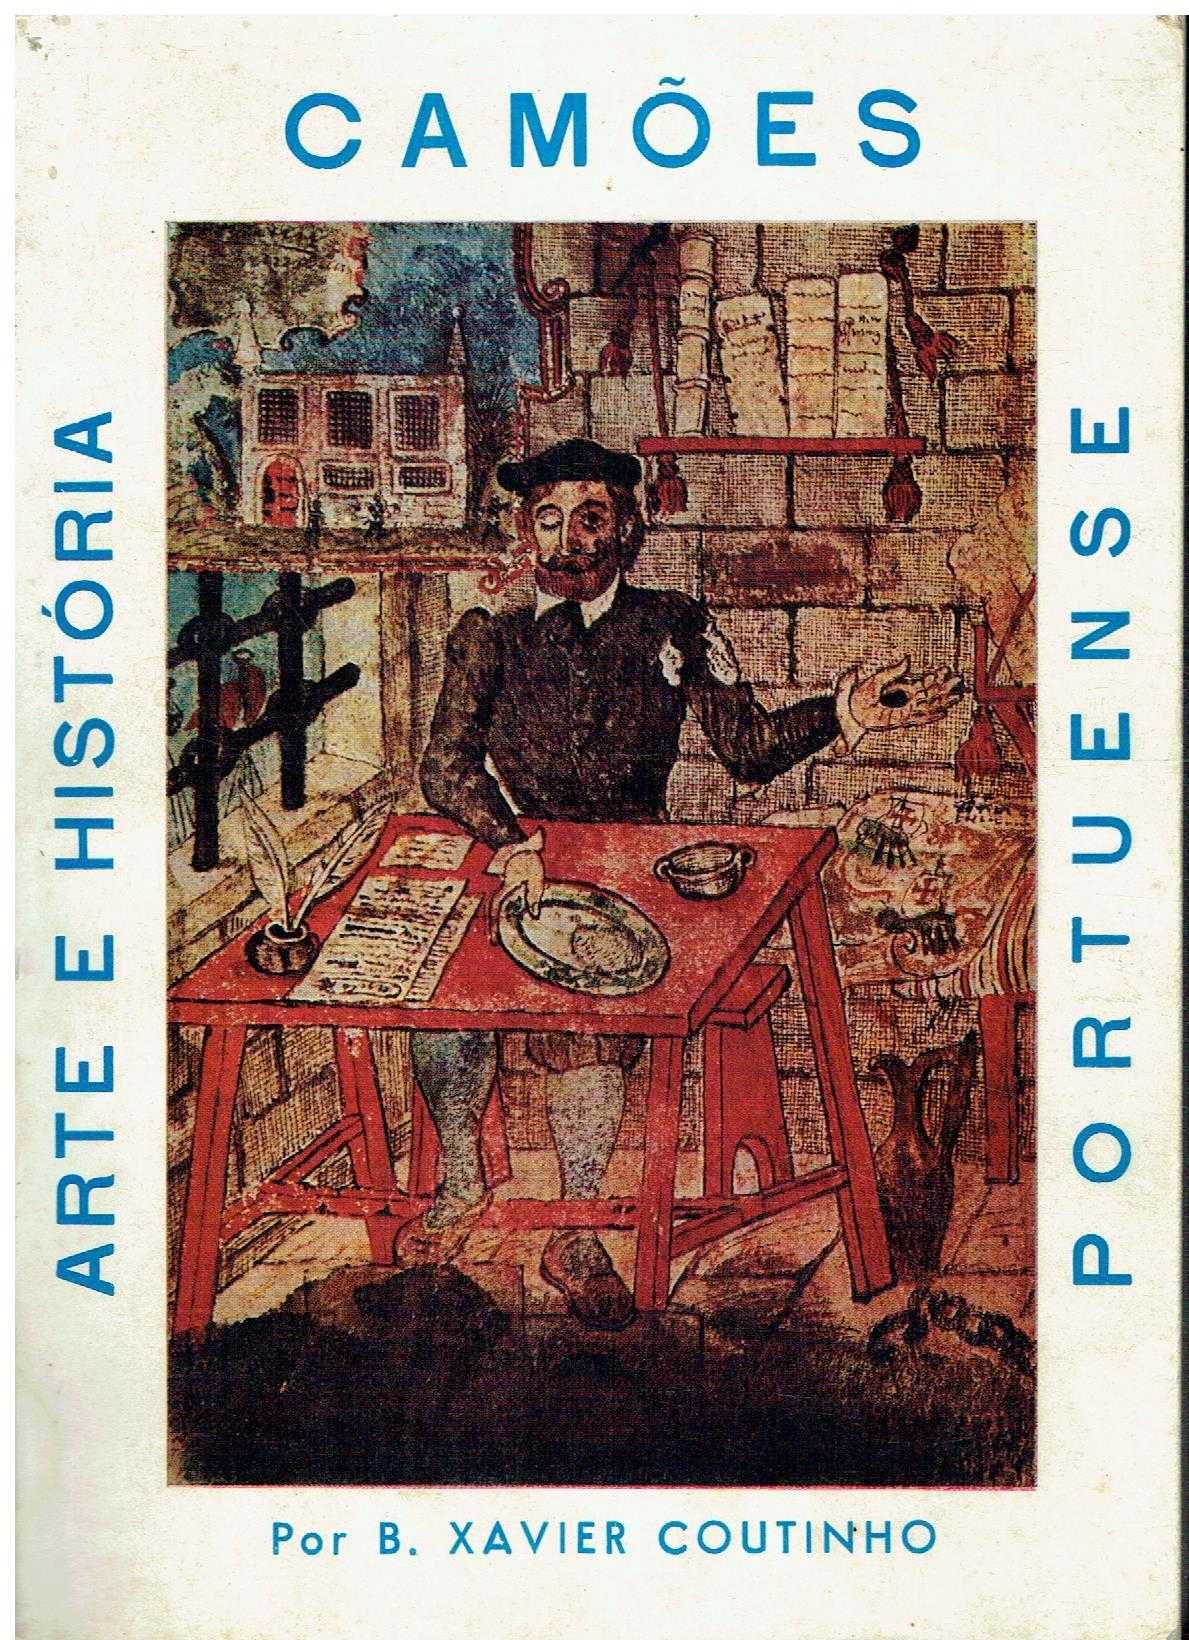 7331  - Camões: Arte e História Portuense. 
por B. Xavier Coutinho